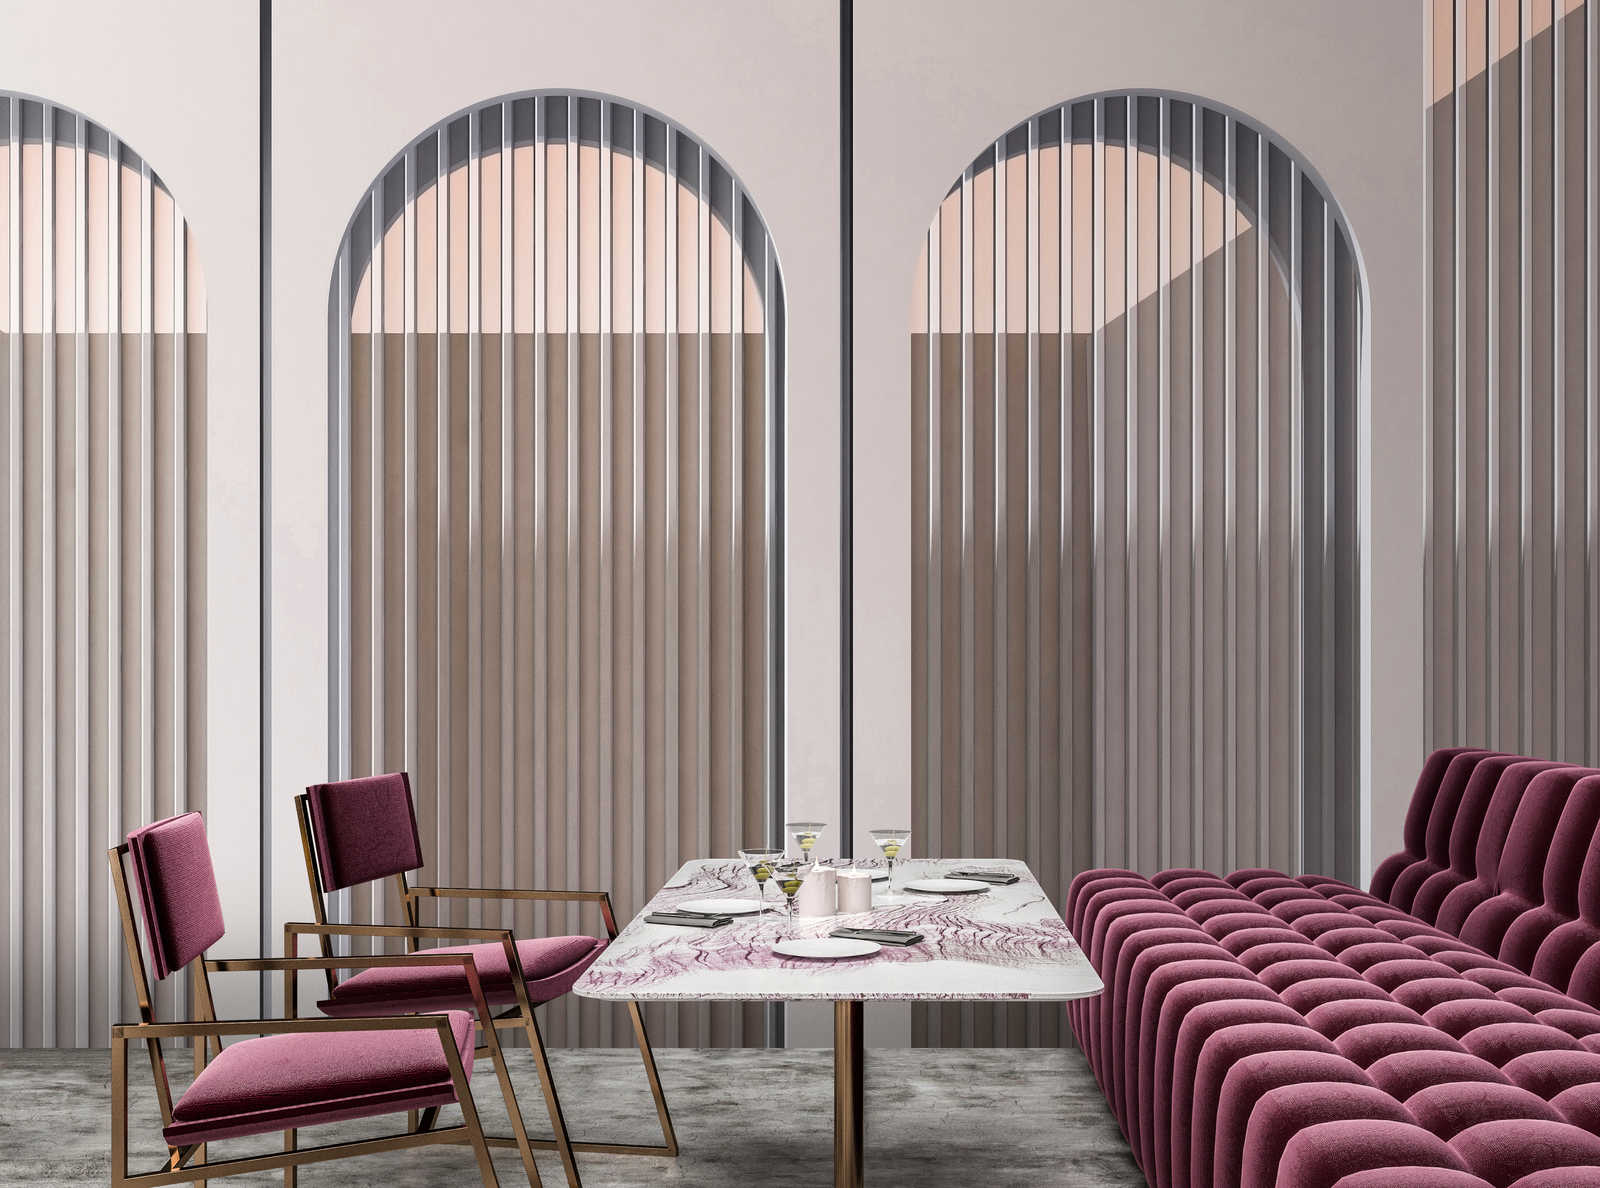             Escape Room 2 - Papier peint architecture moderne arc en ciel gris & rose
        